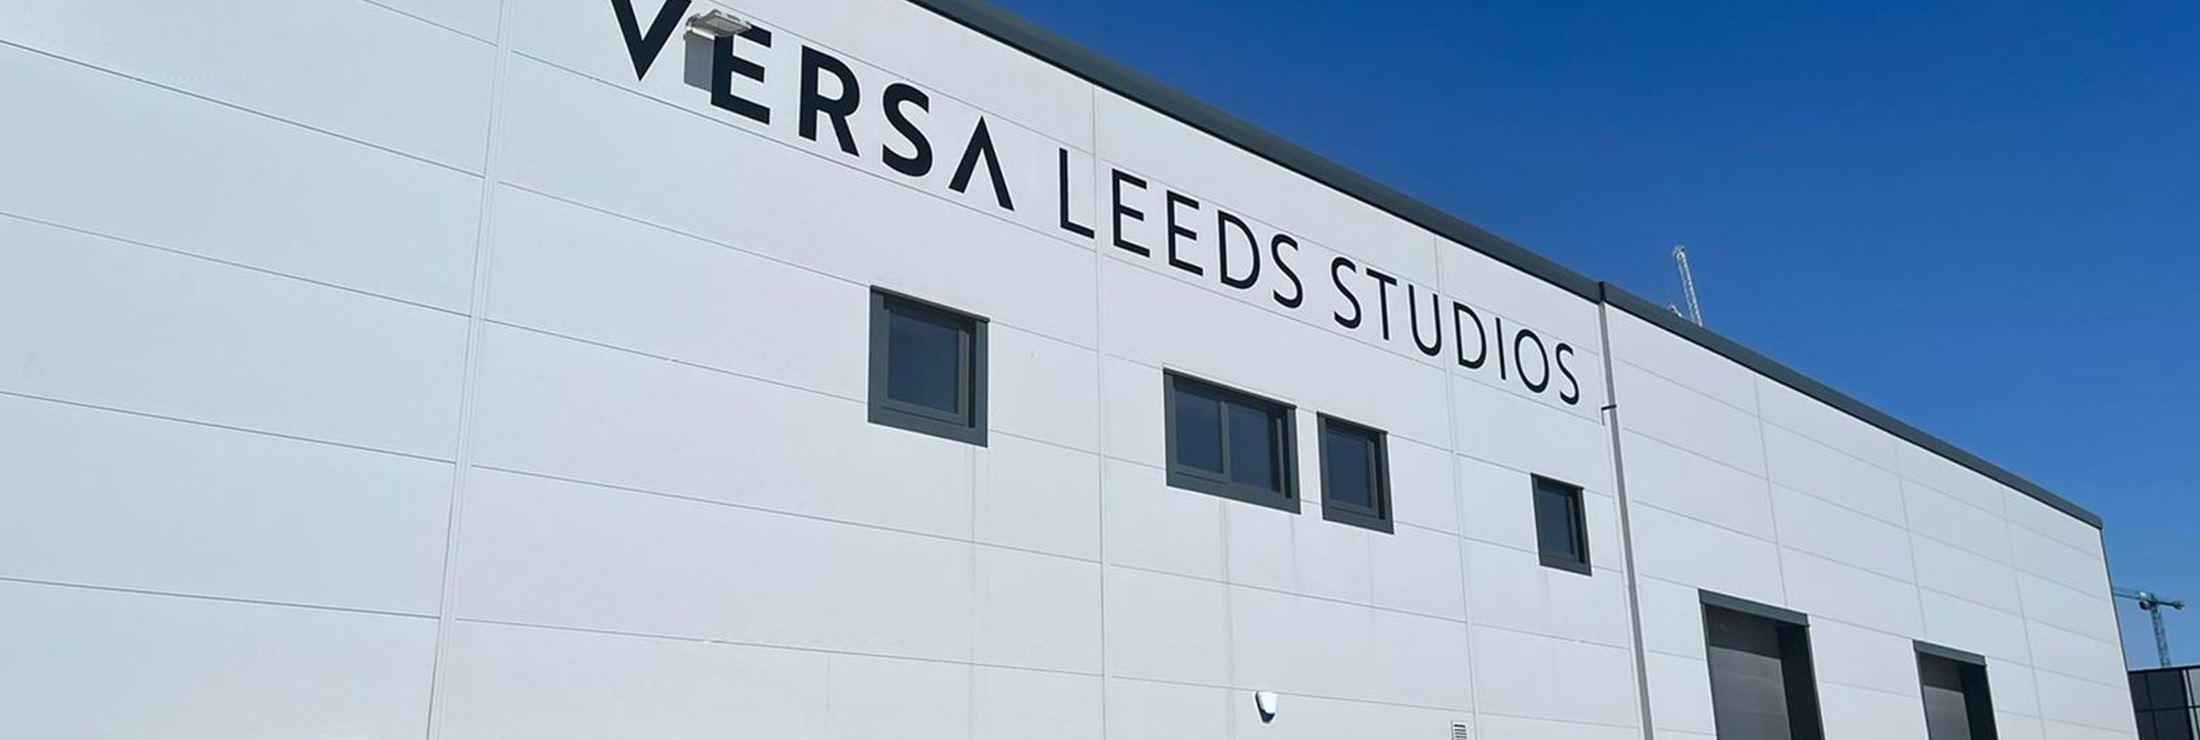 versa - Leeds studio